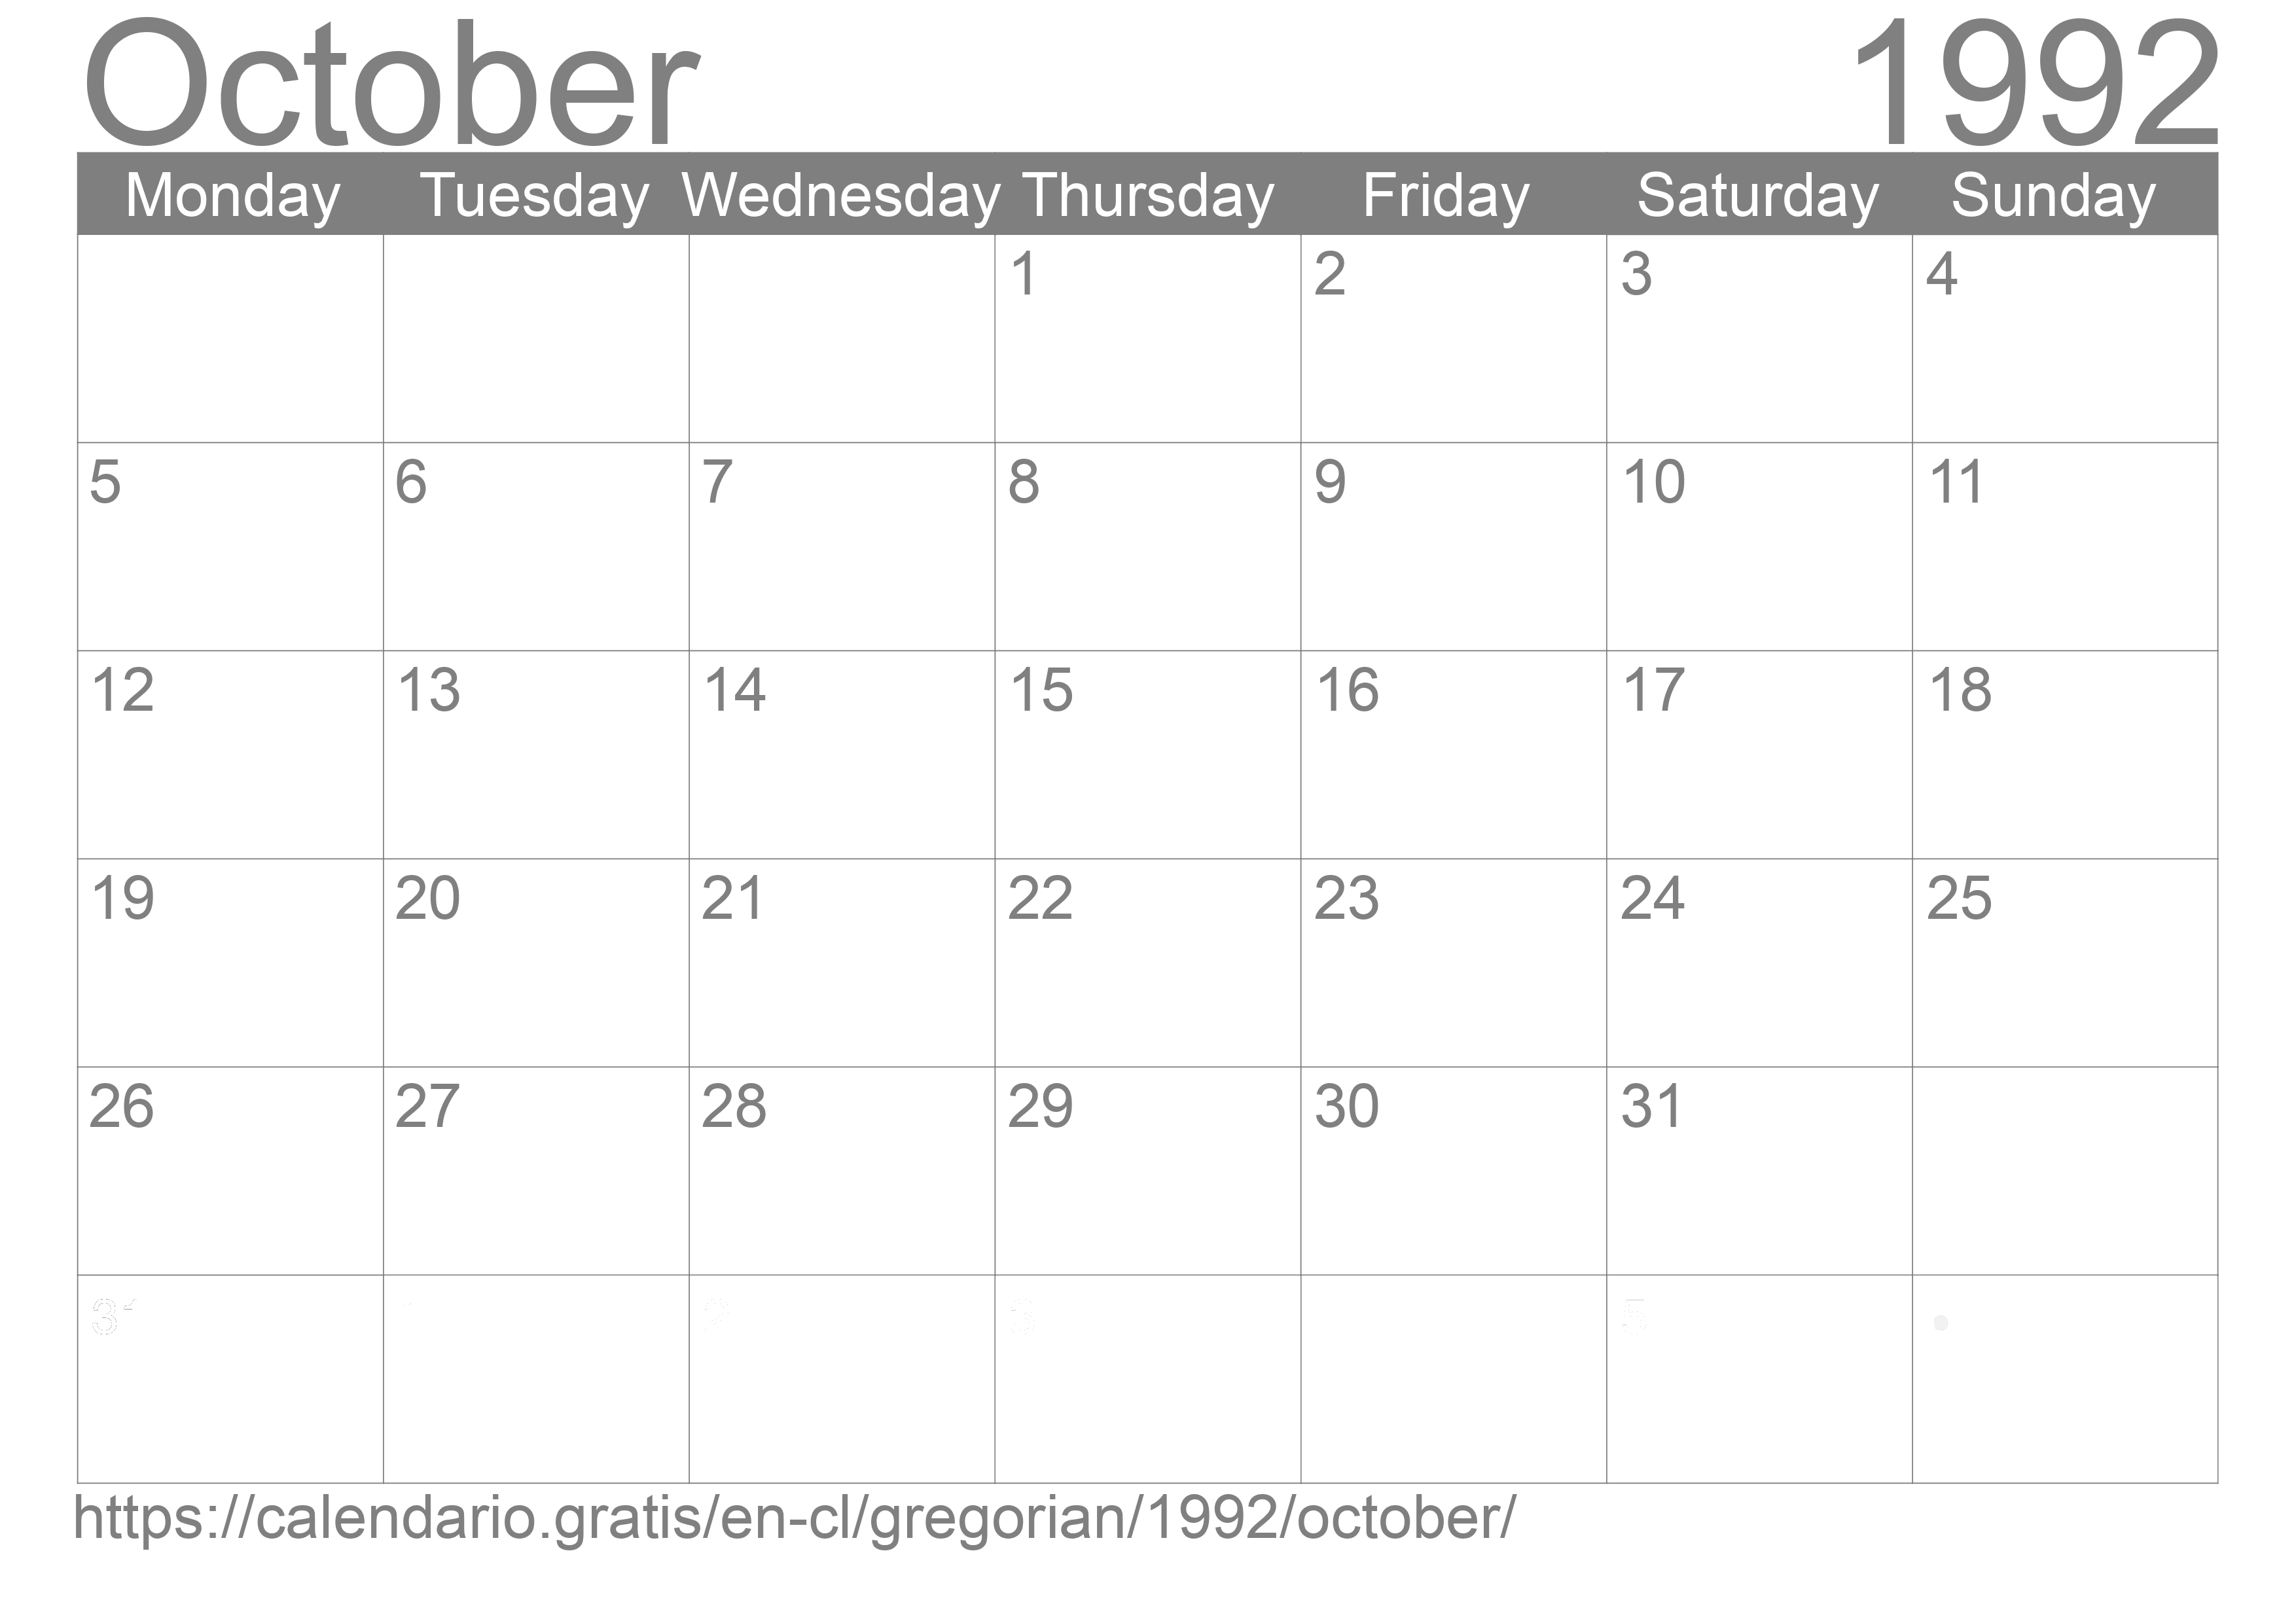 Calendar October 1992 to print